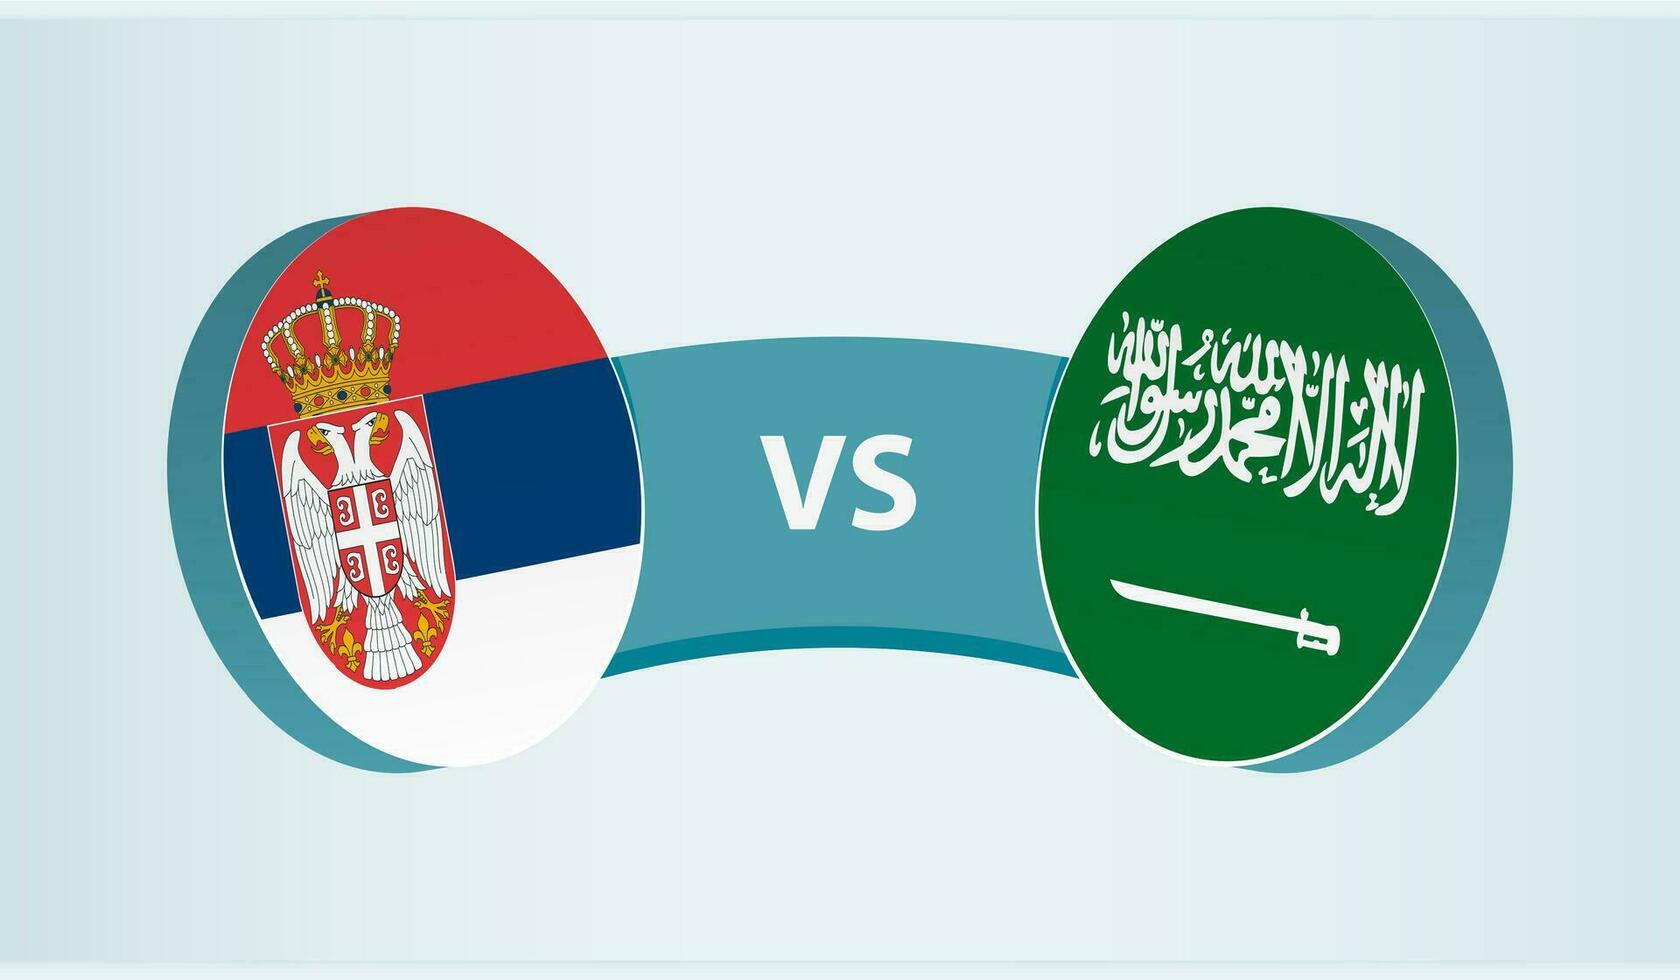 serbia versus saudi arabia, equipo Deportes competencia concepto. vector